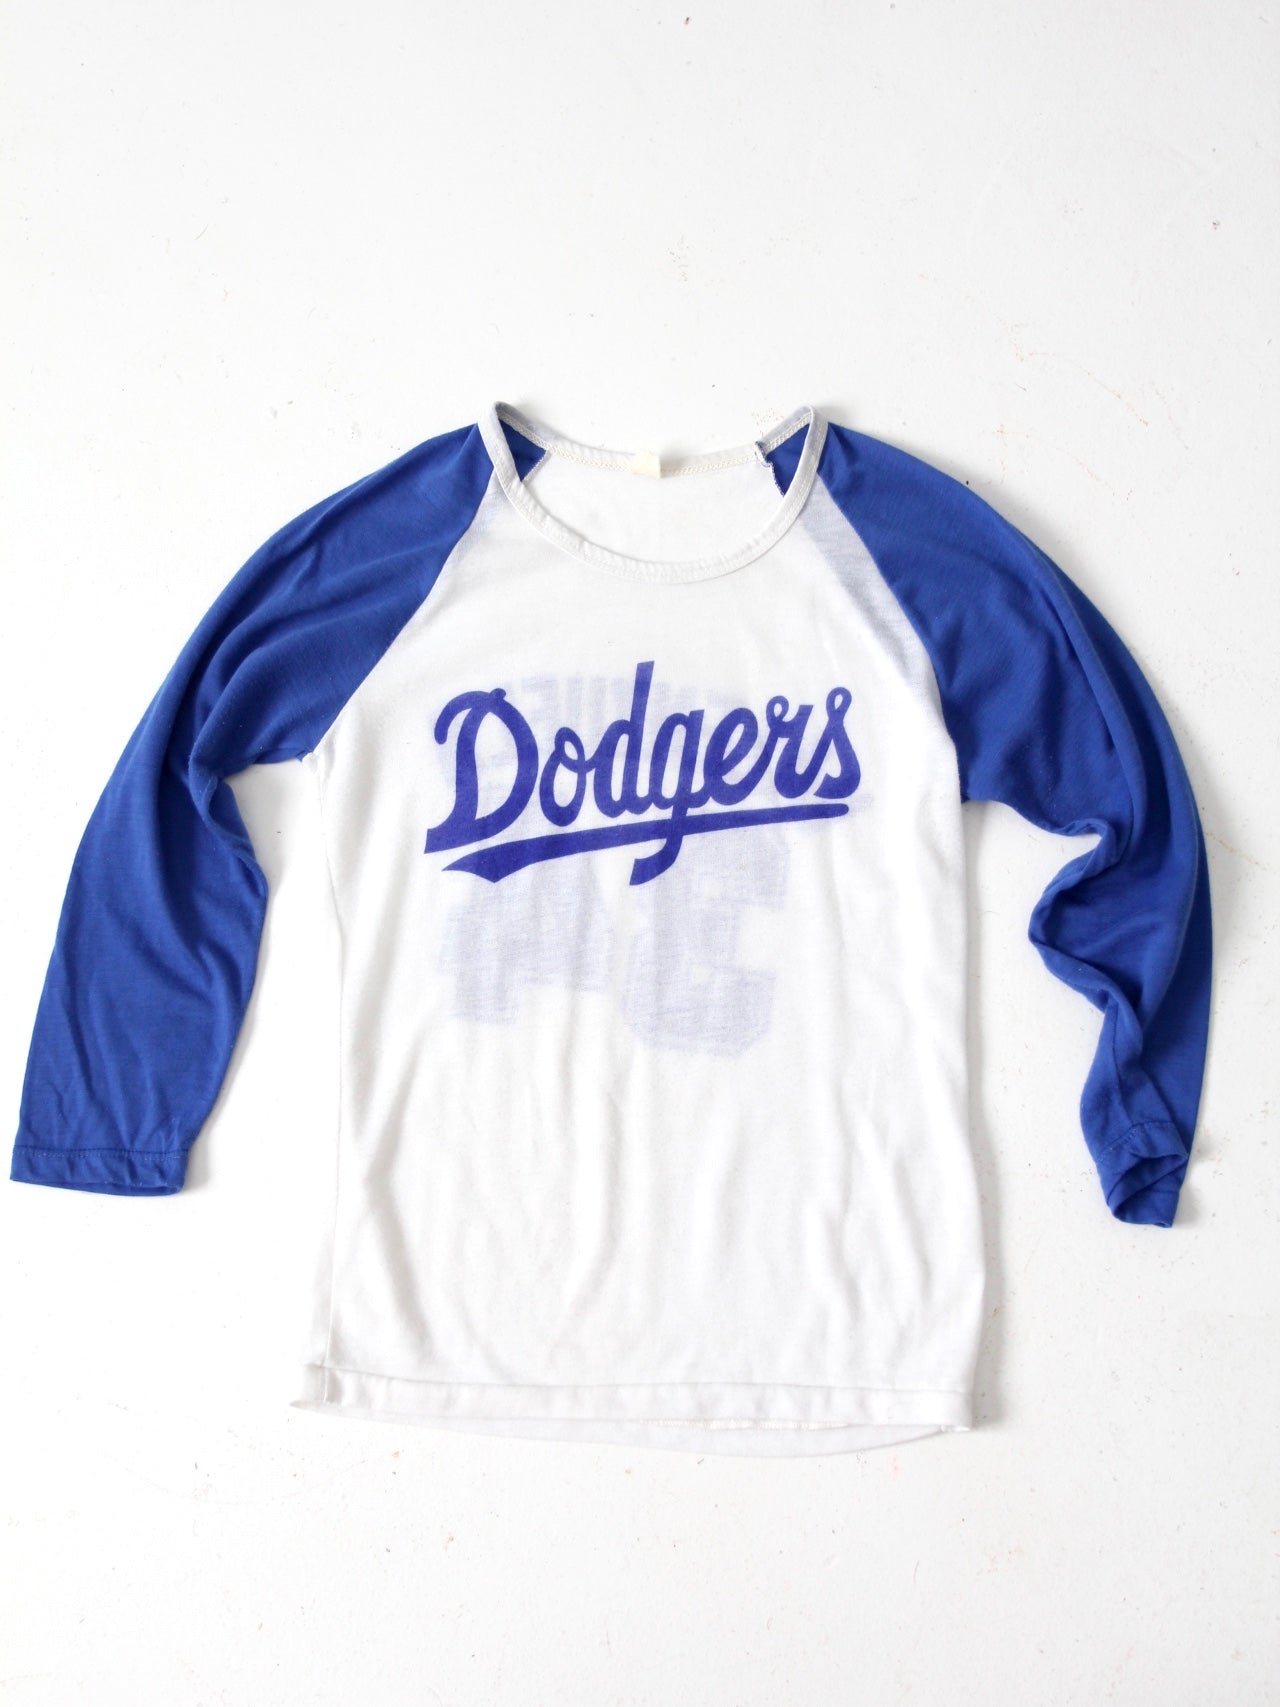 Dodgers Shirt -  Denmark